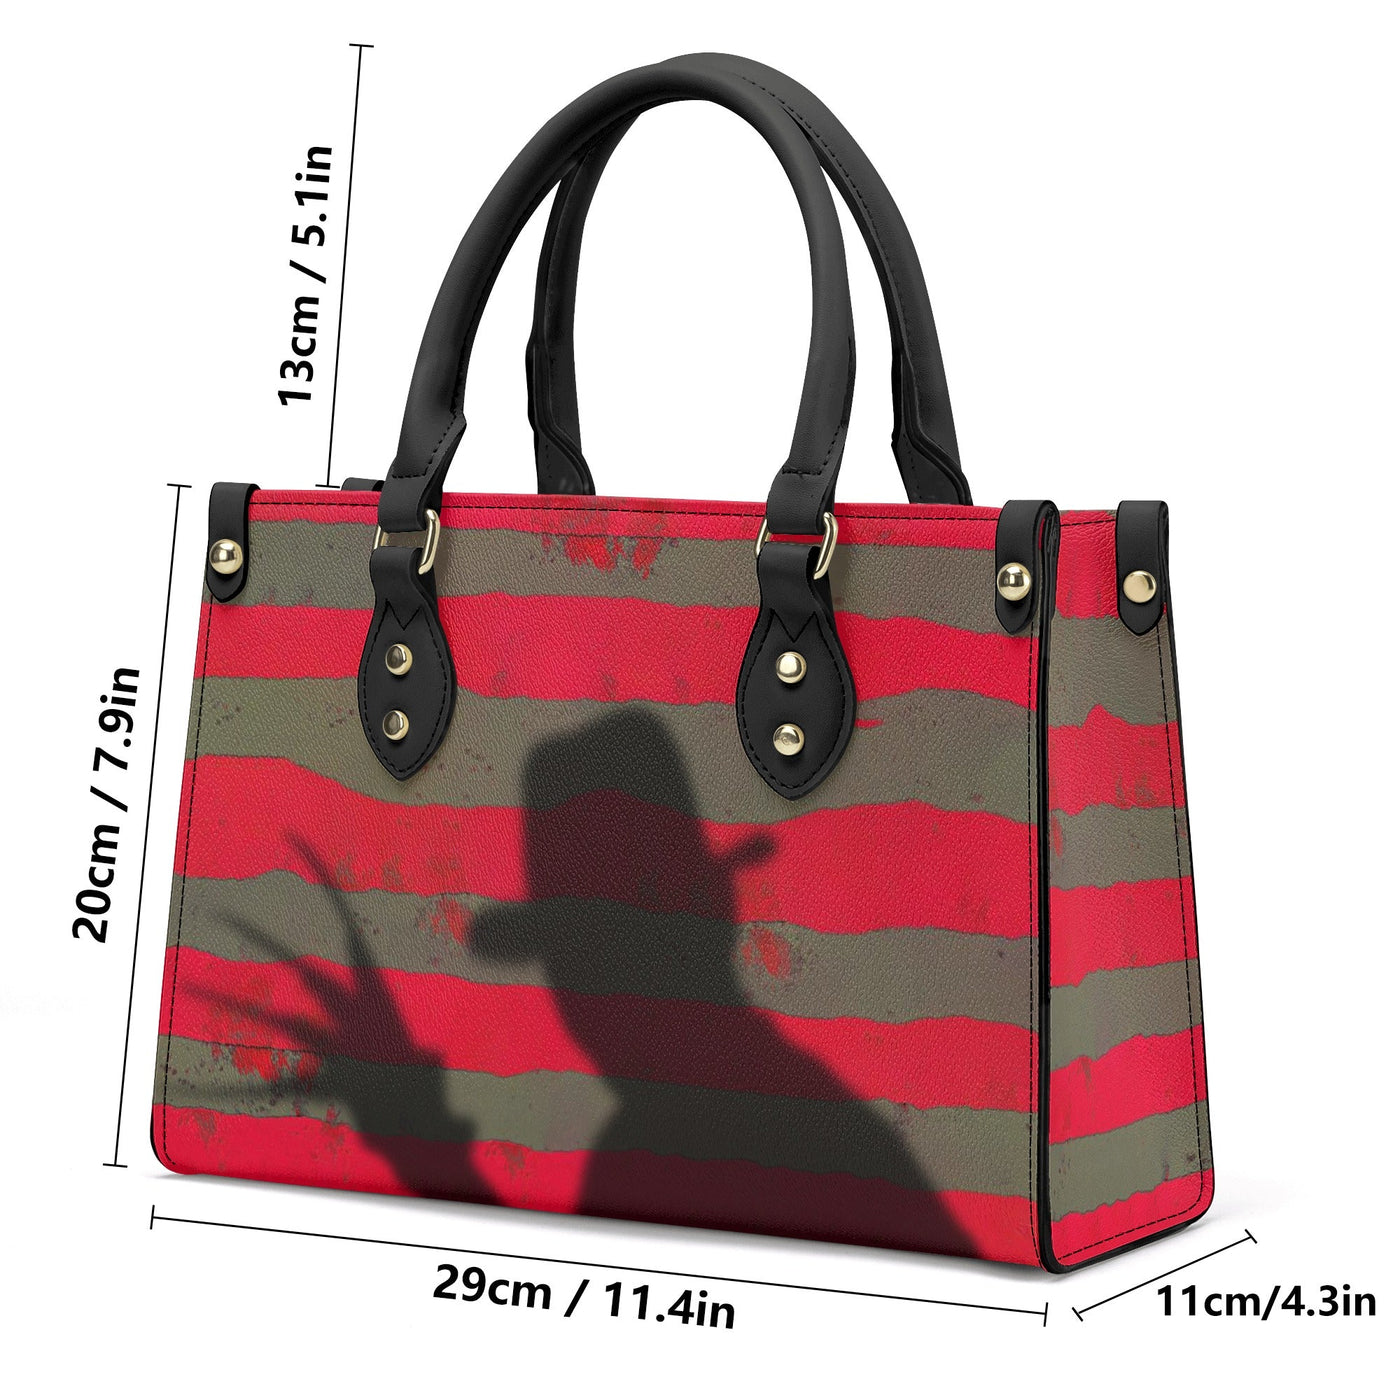 Freddy Krueger's Shadow Luxury Tote Handbag - The Nightmare on Elm Street